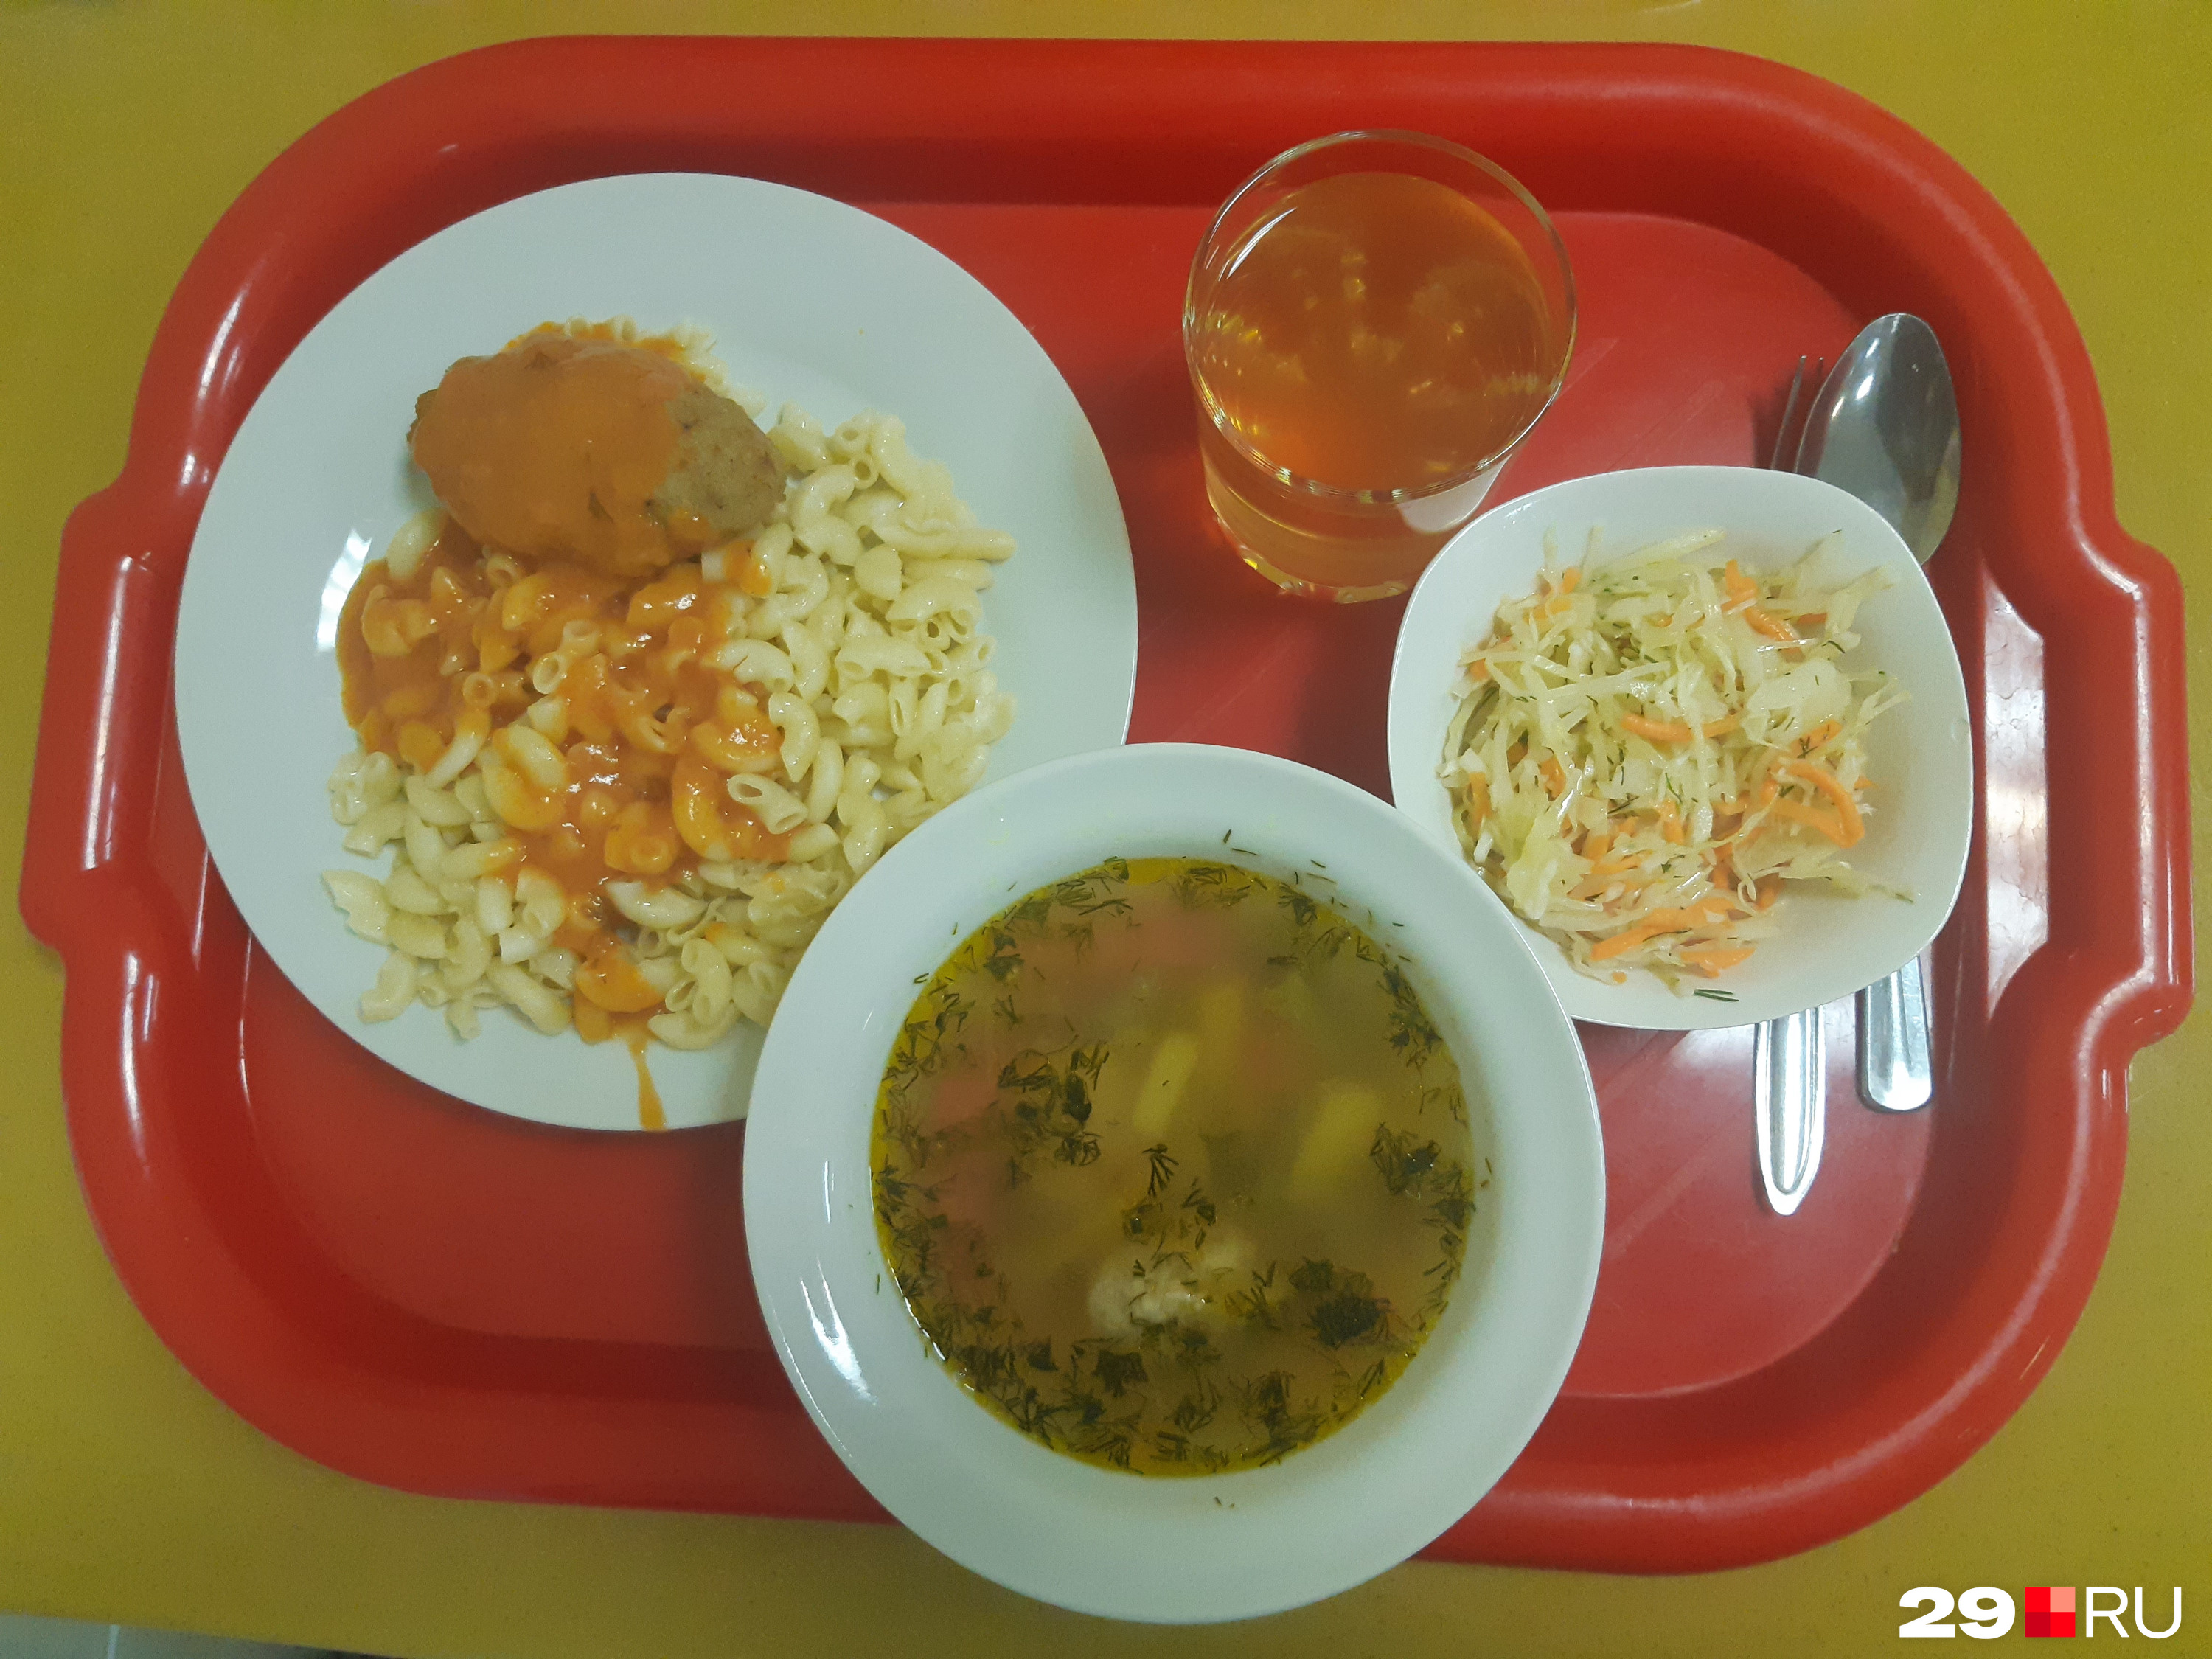 Простые и вкусные блюда в студенческой столовой корпуса САФУ